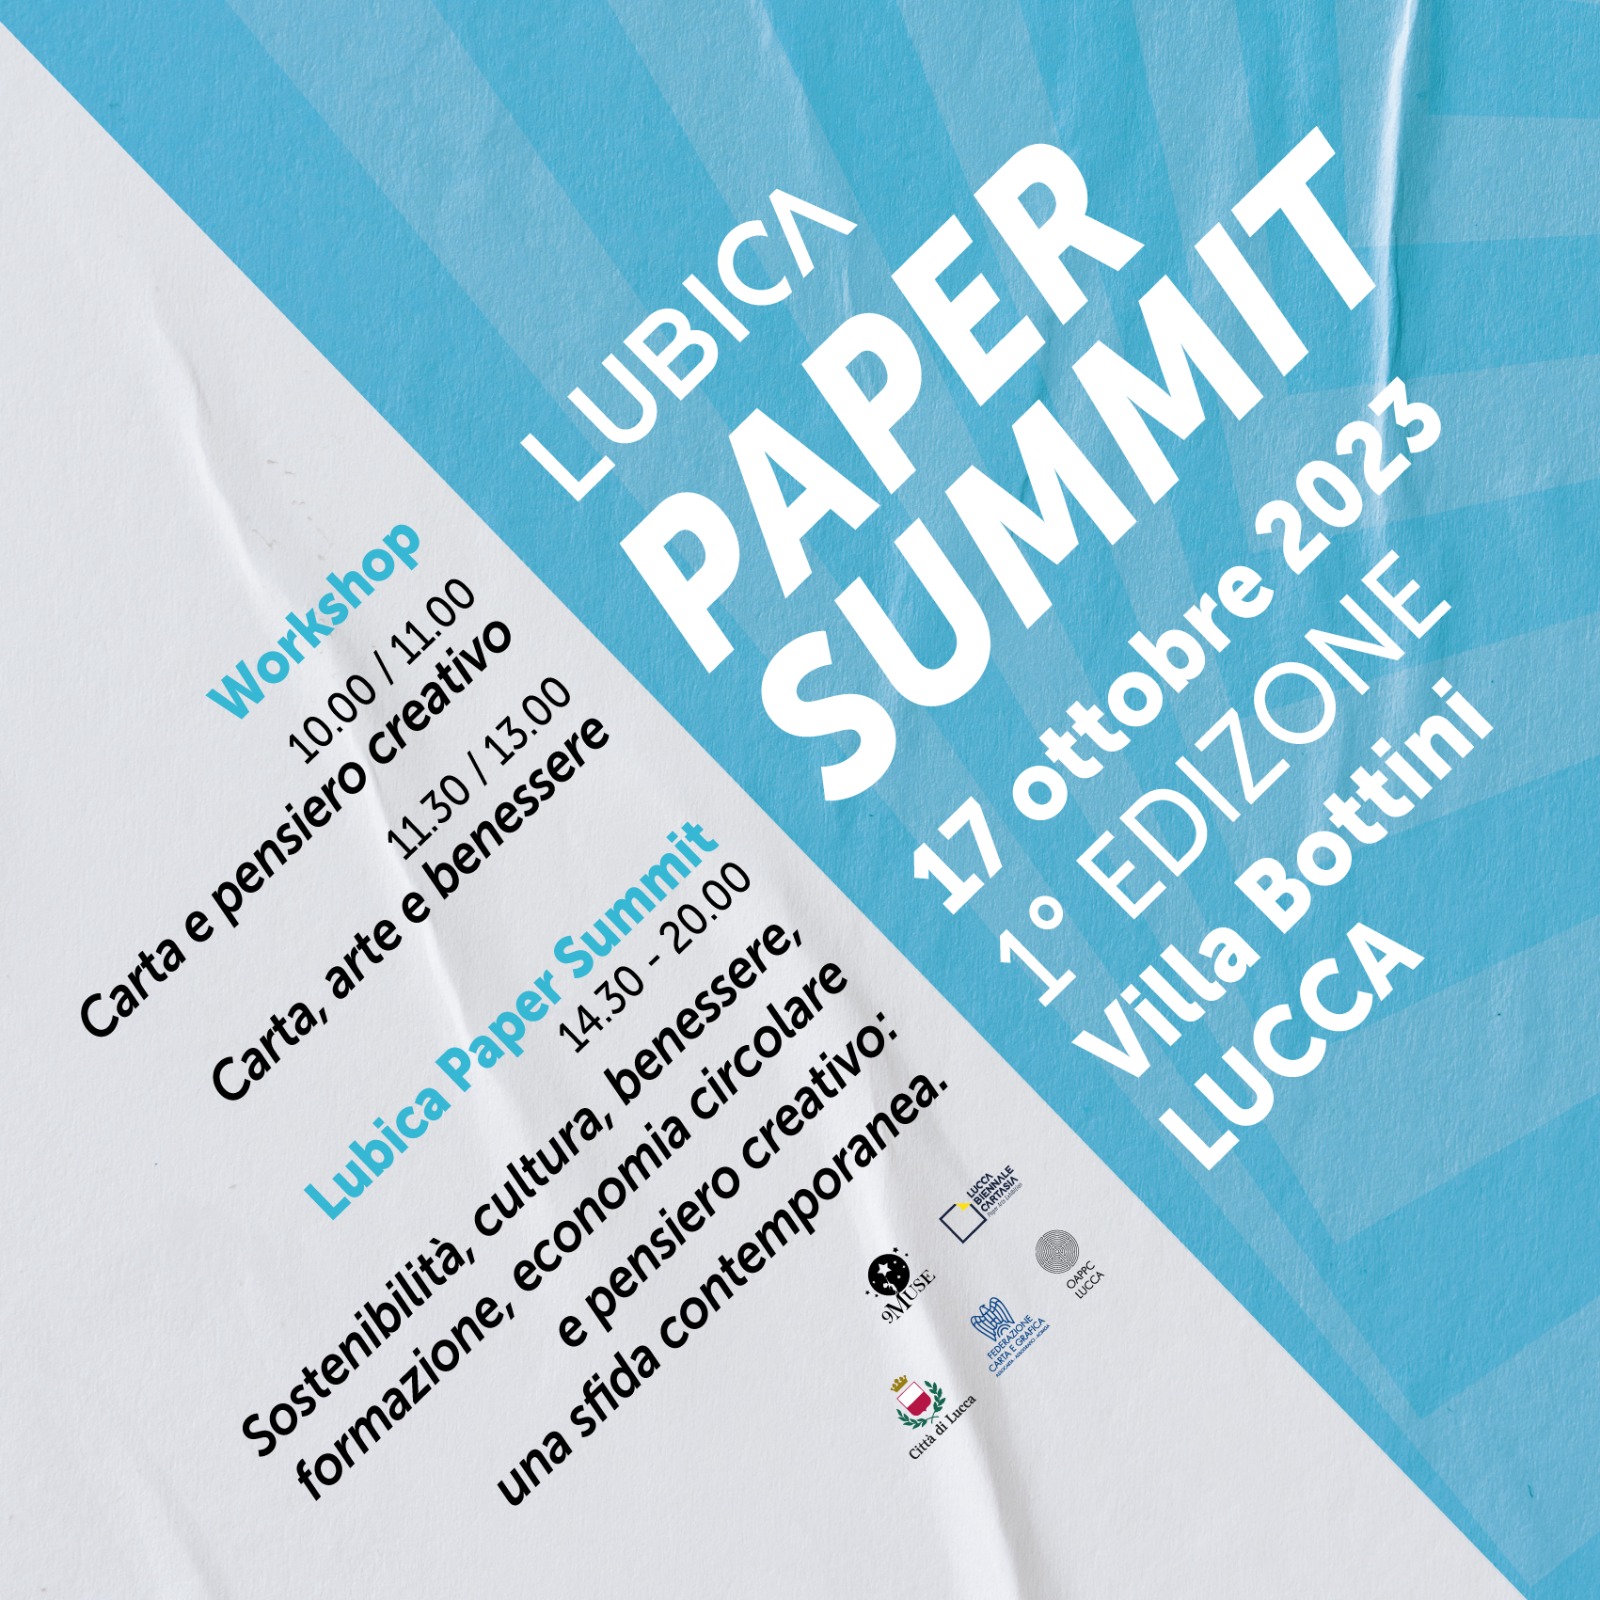 Invito Lubica Paper Summit